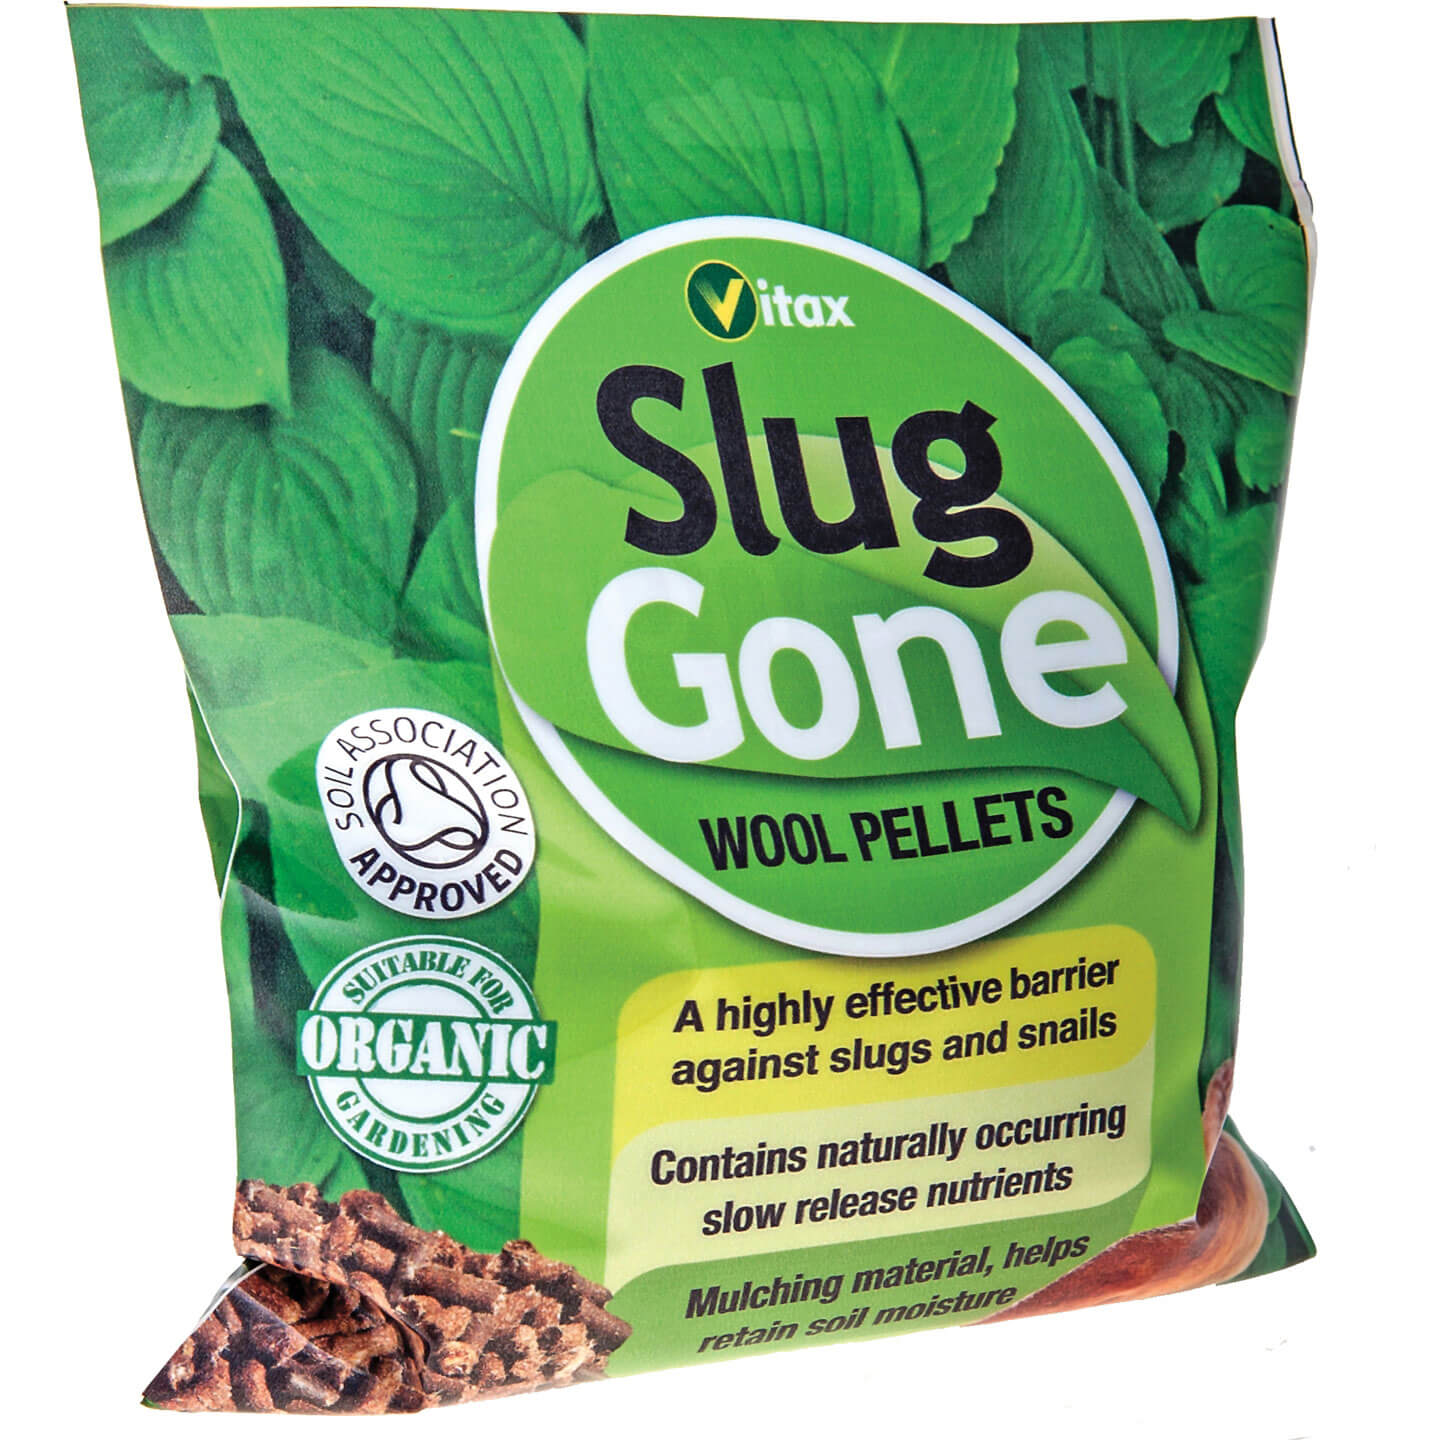 Image of Vitax Slug Gone Wool Pellets for Killing Slugs 1l